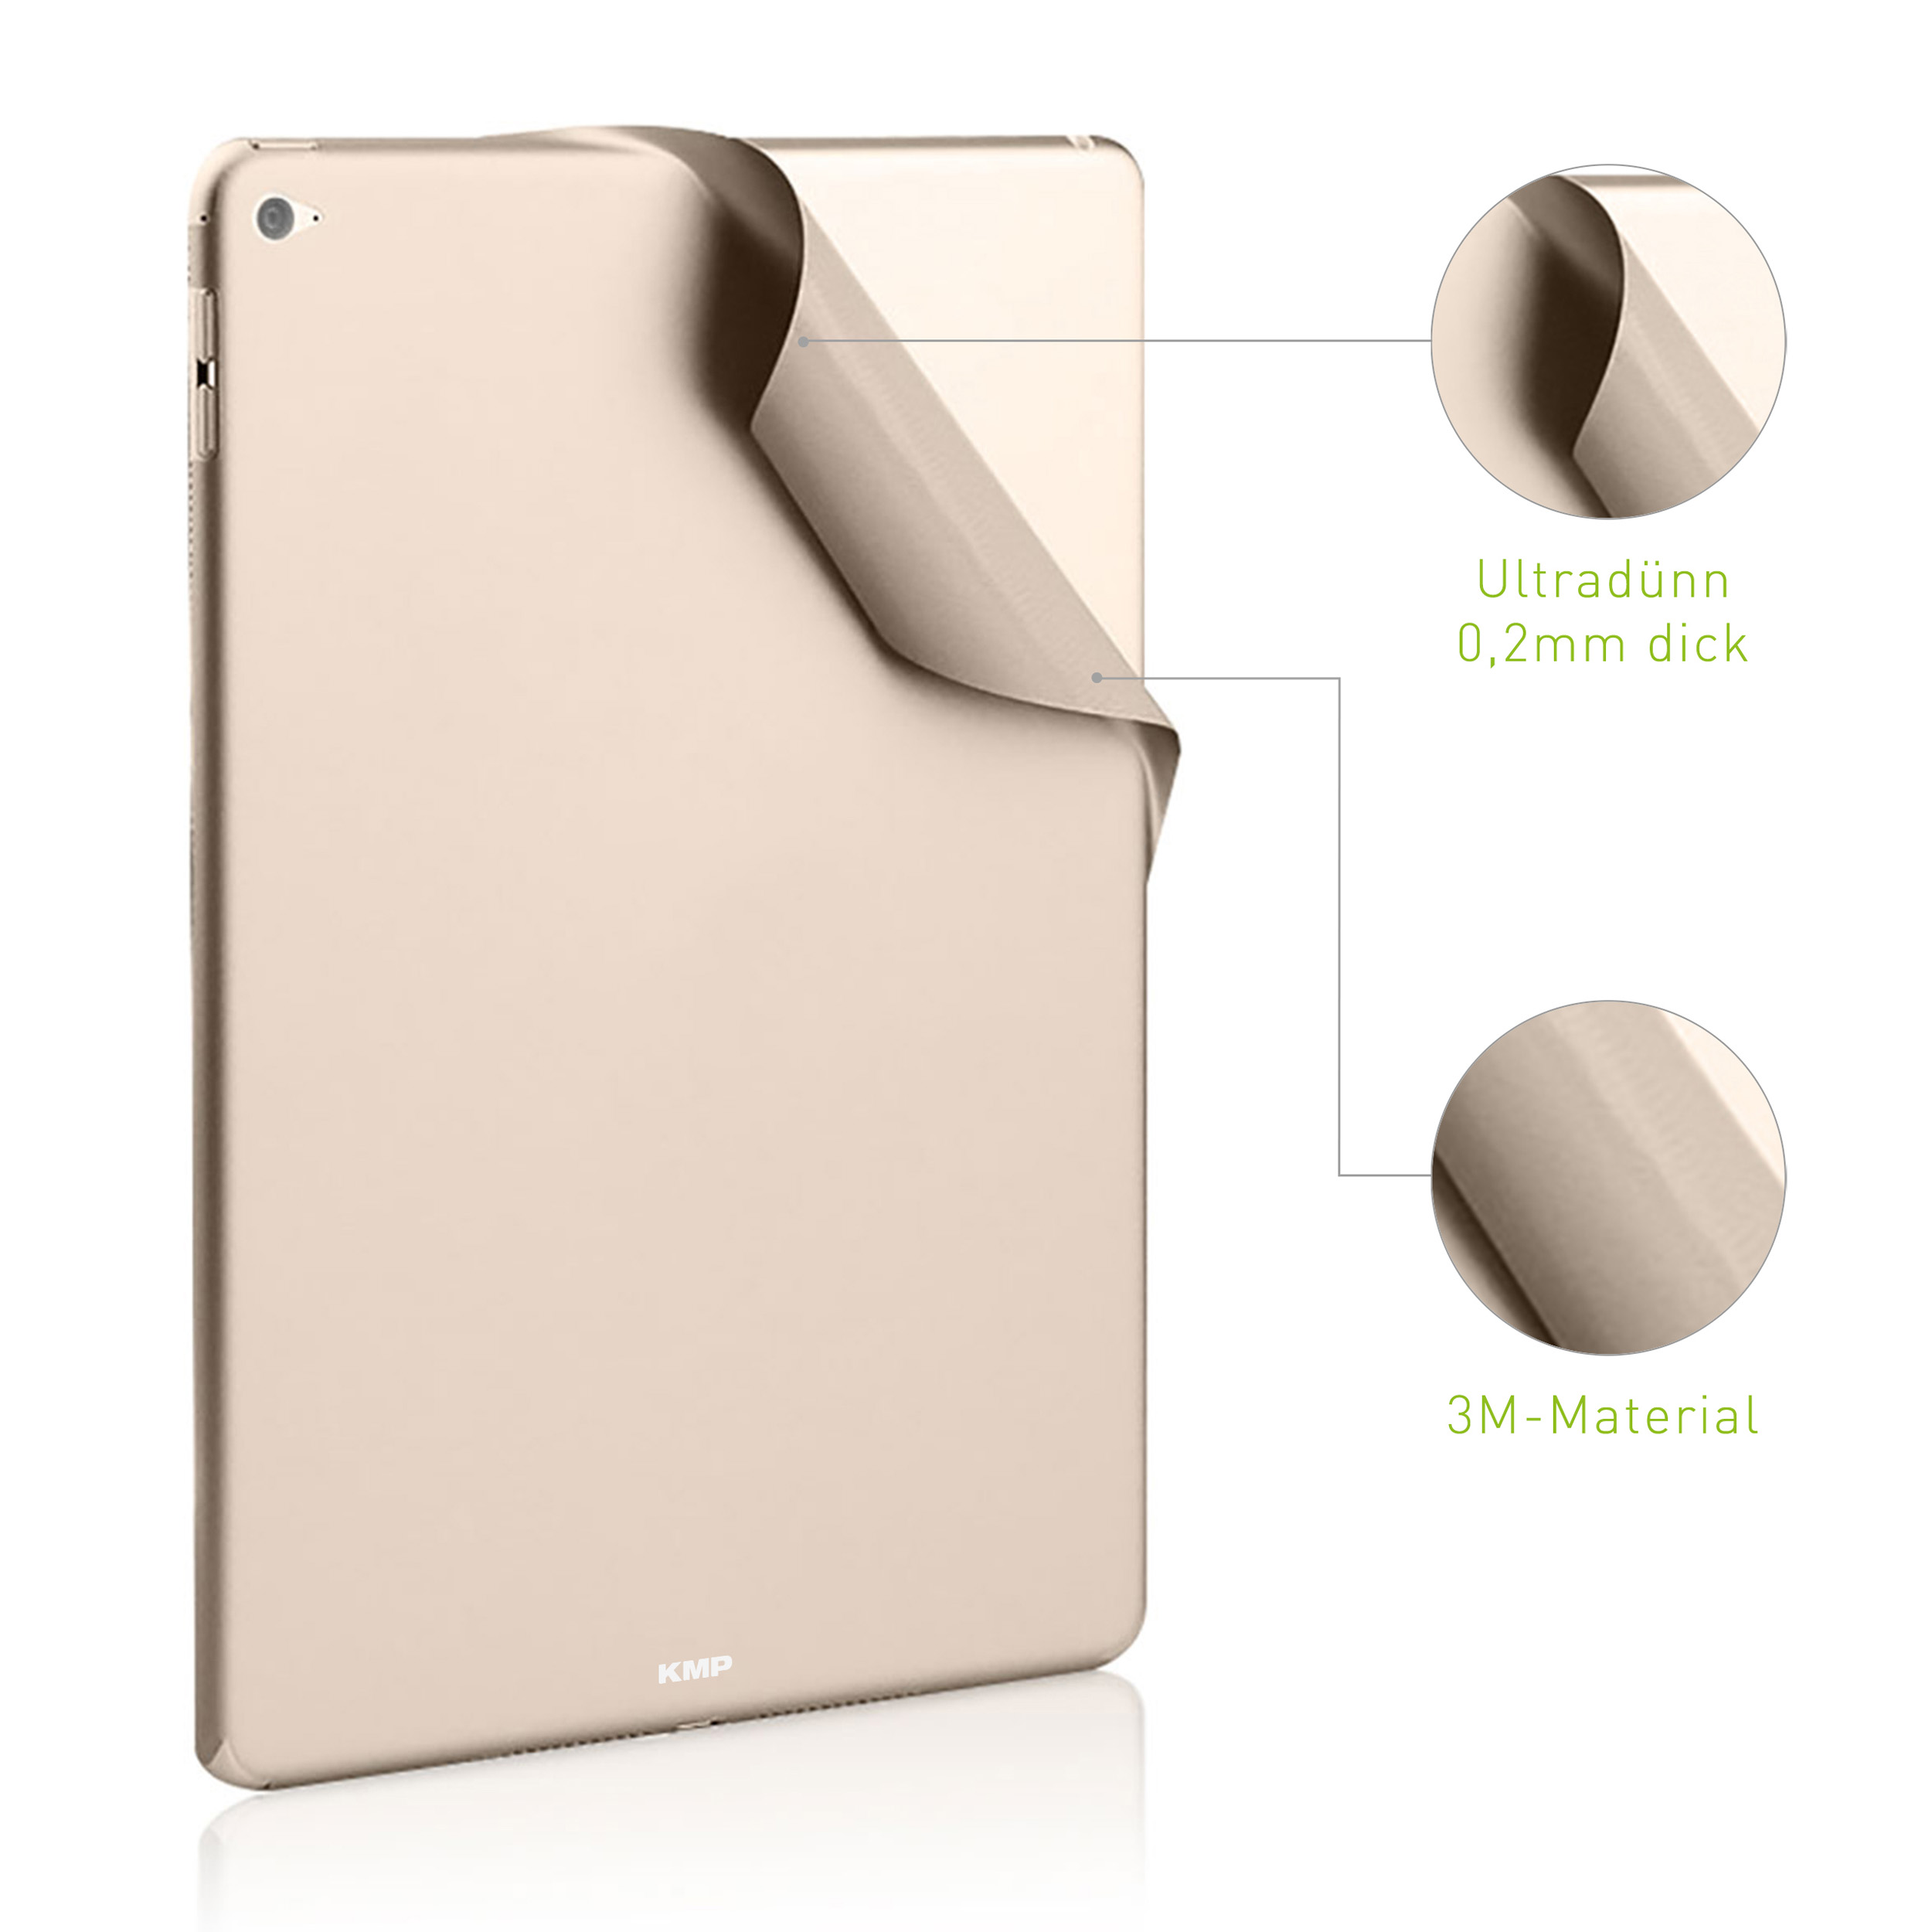 KMP Schutzfolie für skin Vinylfilm, 4 Protective Apple für AntiScratchLevel, 3M-Material, gold Gold 6H Cover Mini Flip iPad Rückseite